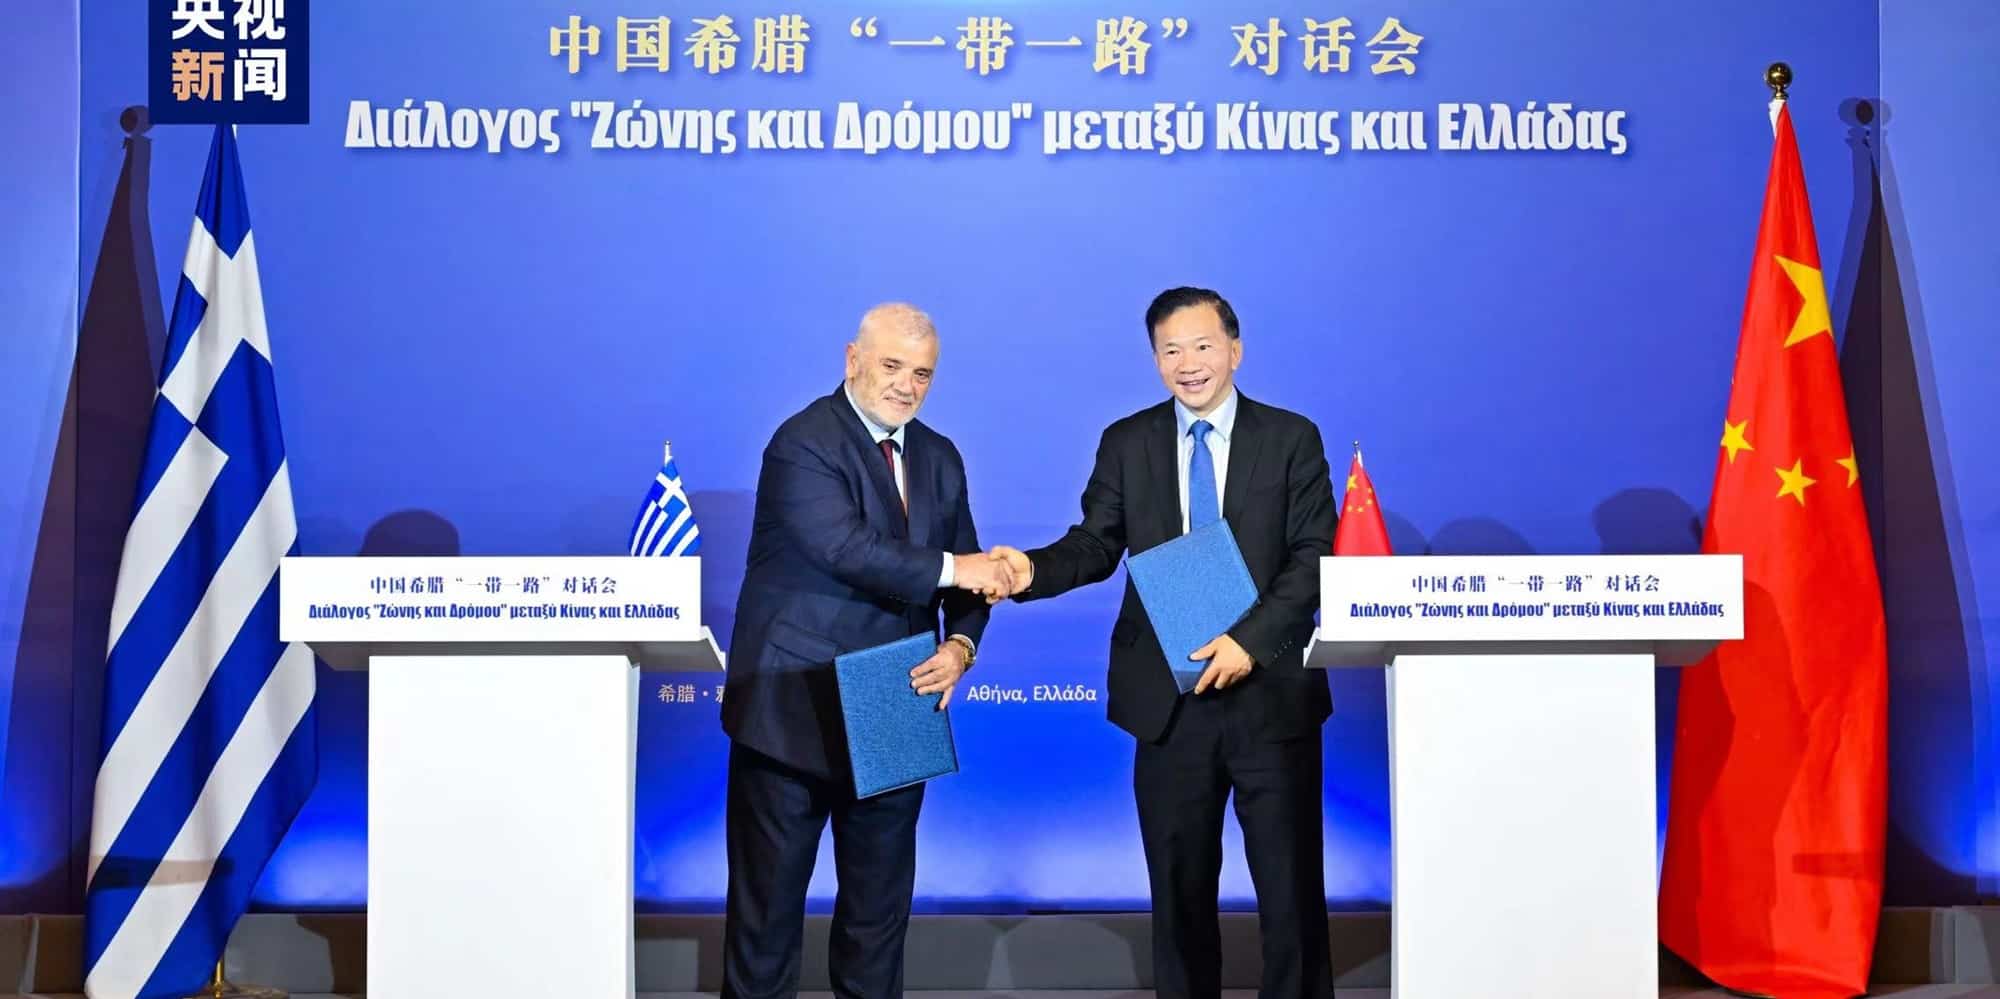 Ο Δημήτρης Μελισσανίδης και ο Σεν Χάισιόνγκ, αναπληρωτής υπουργός Δημοσιότητας της Κίνας στην Ελλάδα